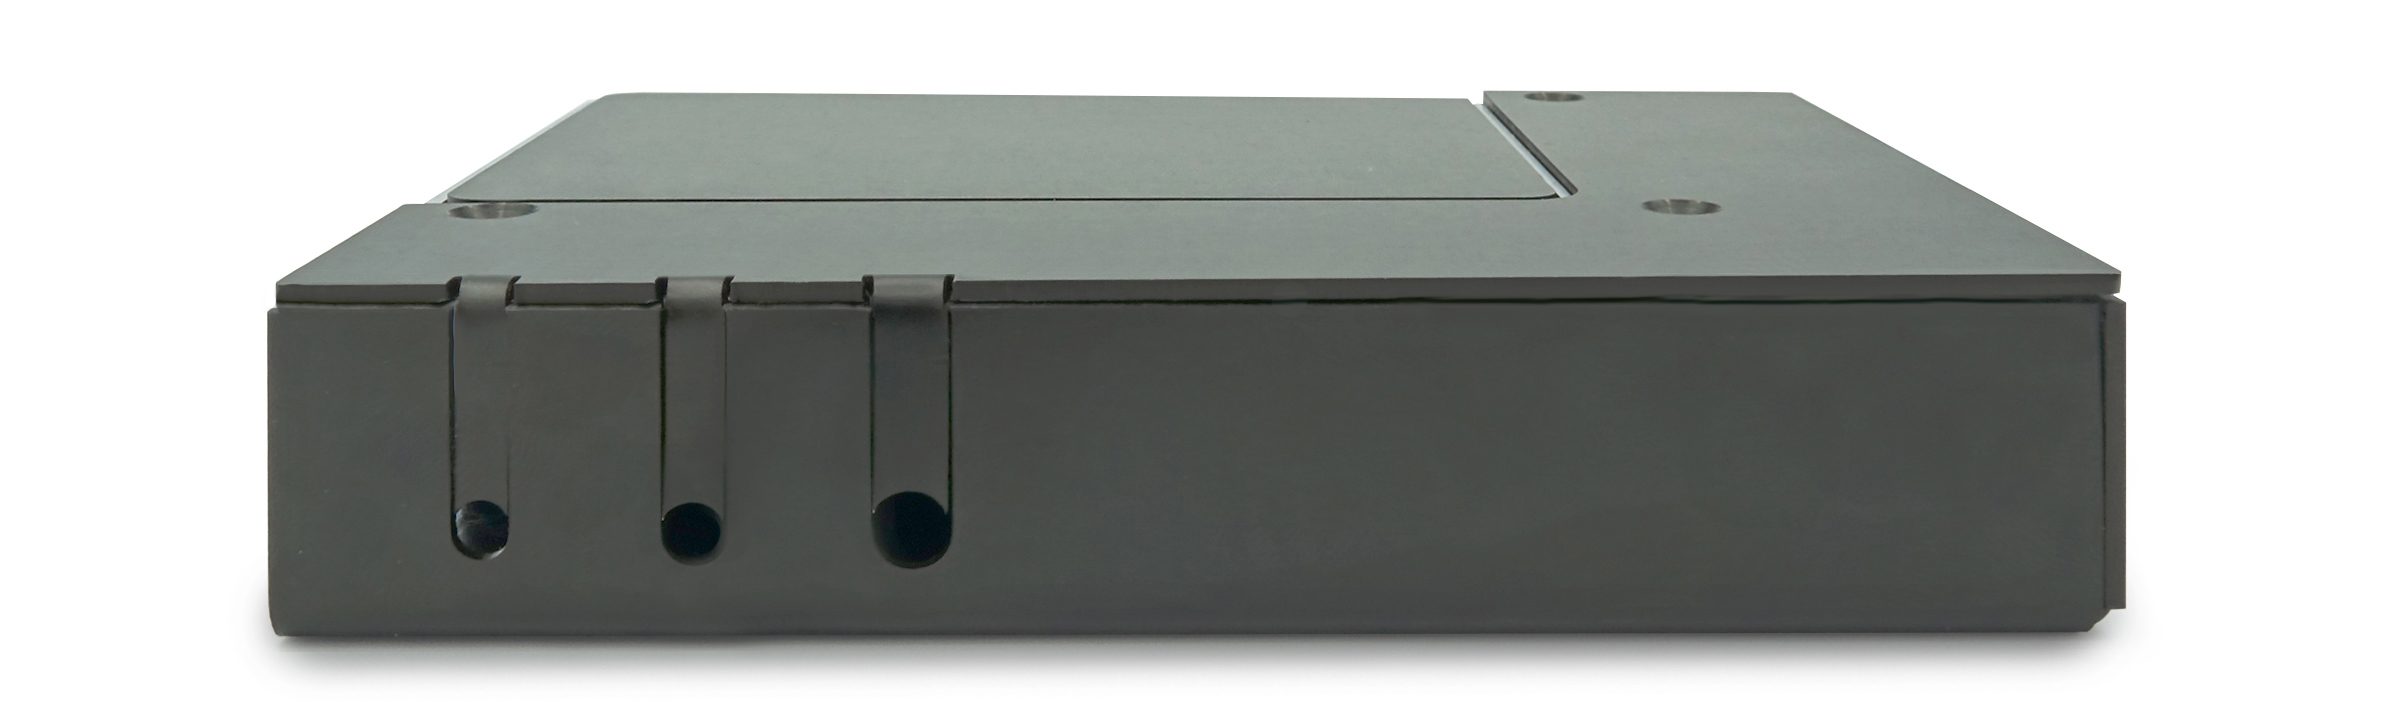 Für industrielle Anwendungen wird der Raspberry Pi in ein Metallgehäuse verpackt. (Bild: Concept International GmbH)